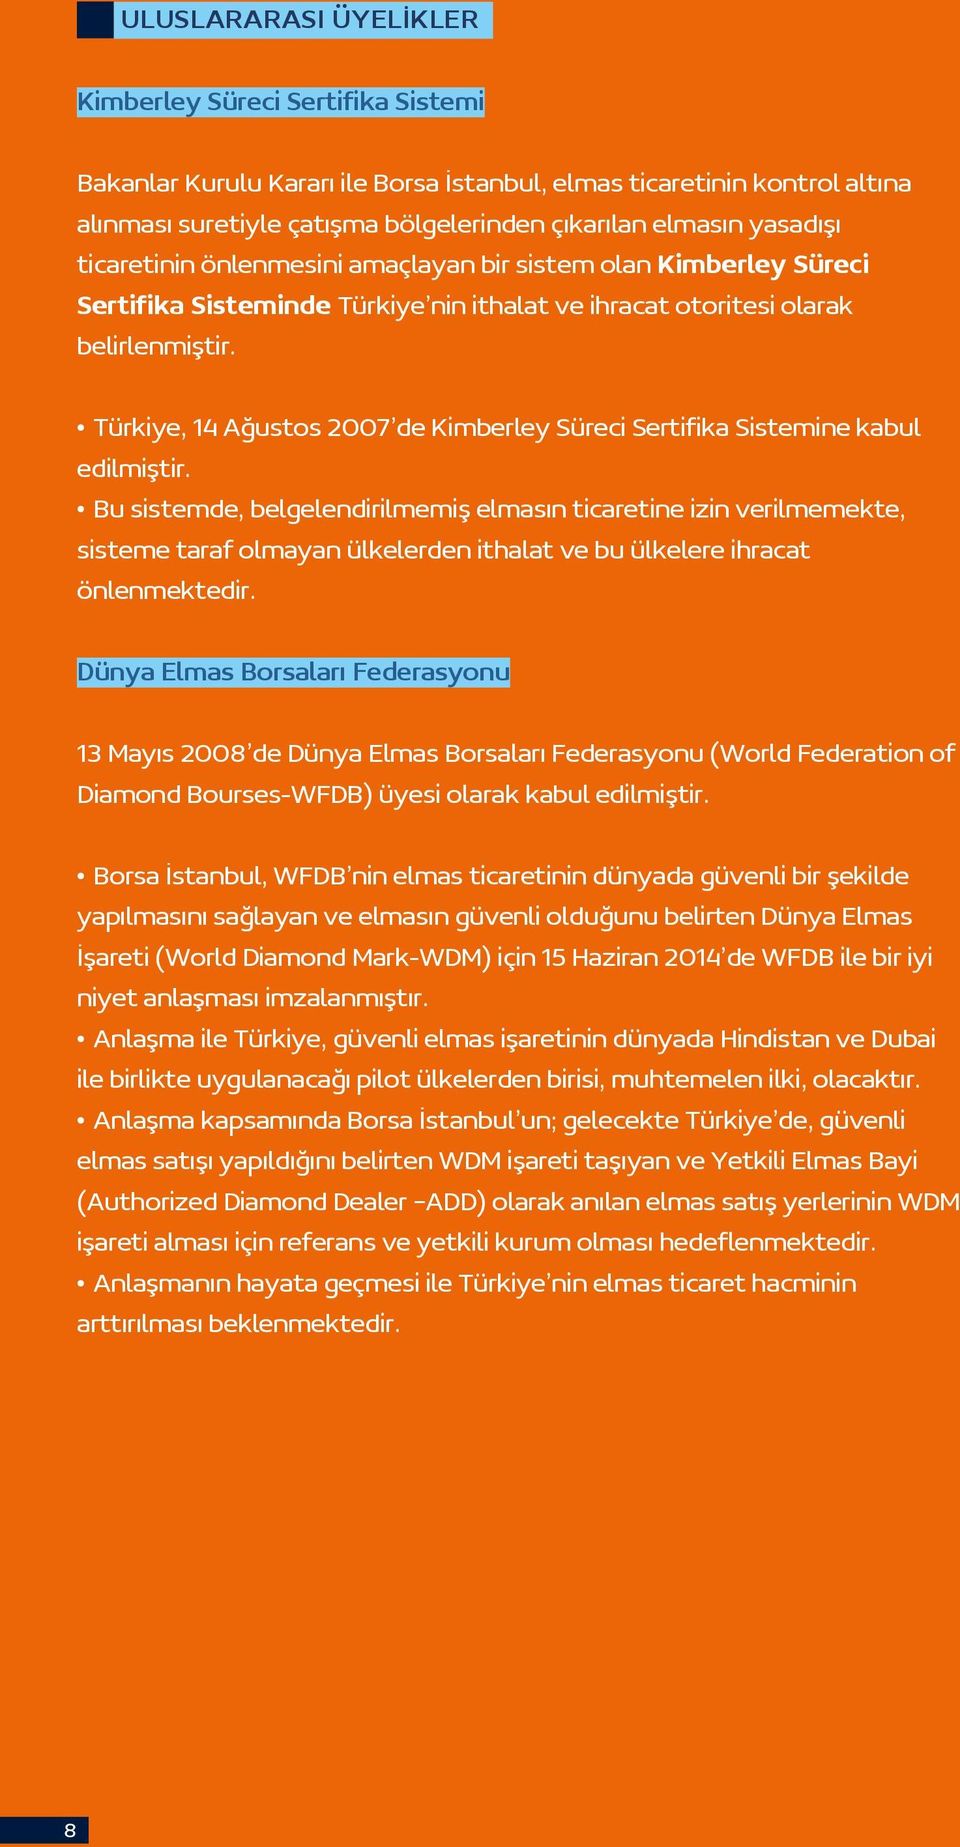 Türkiye, 14 Ağustos 2007 de Kimberley Süreci Sertifika Sistemine kabul edilmiştir.